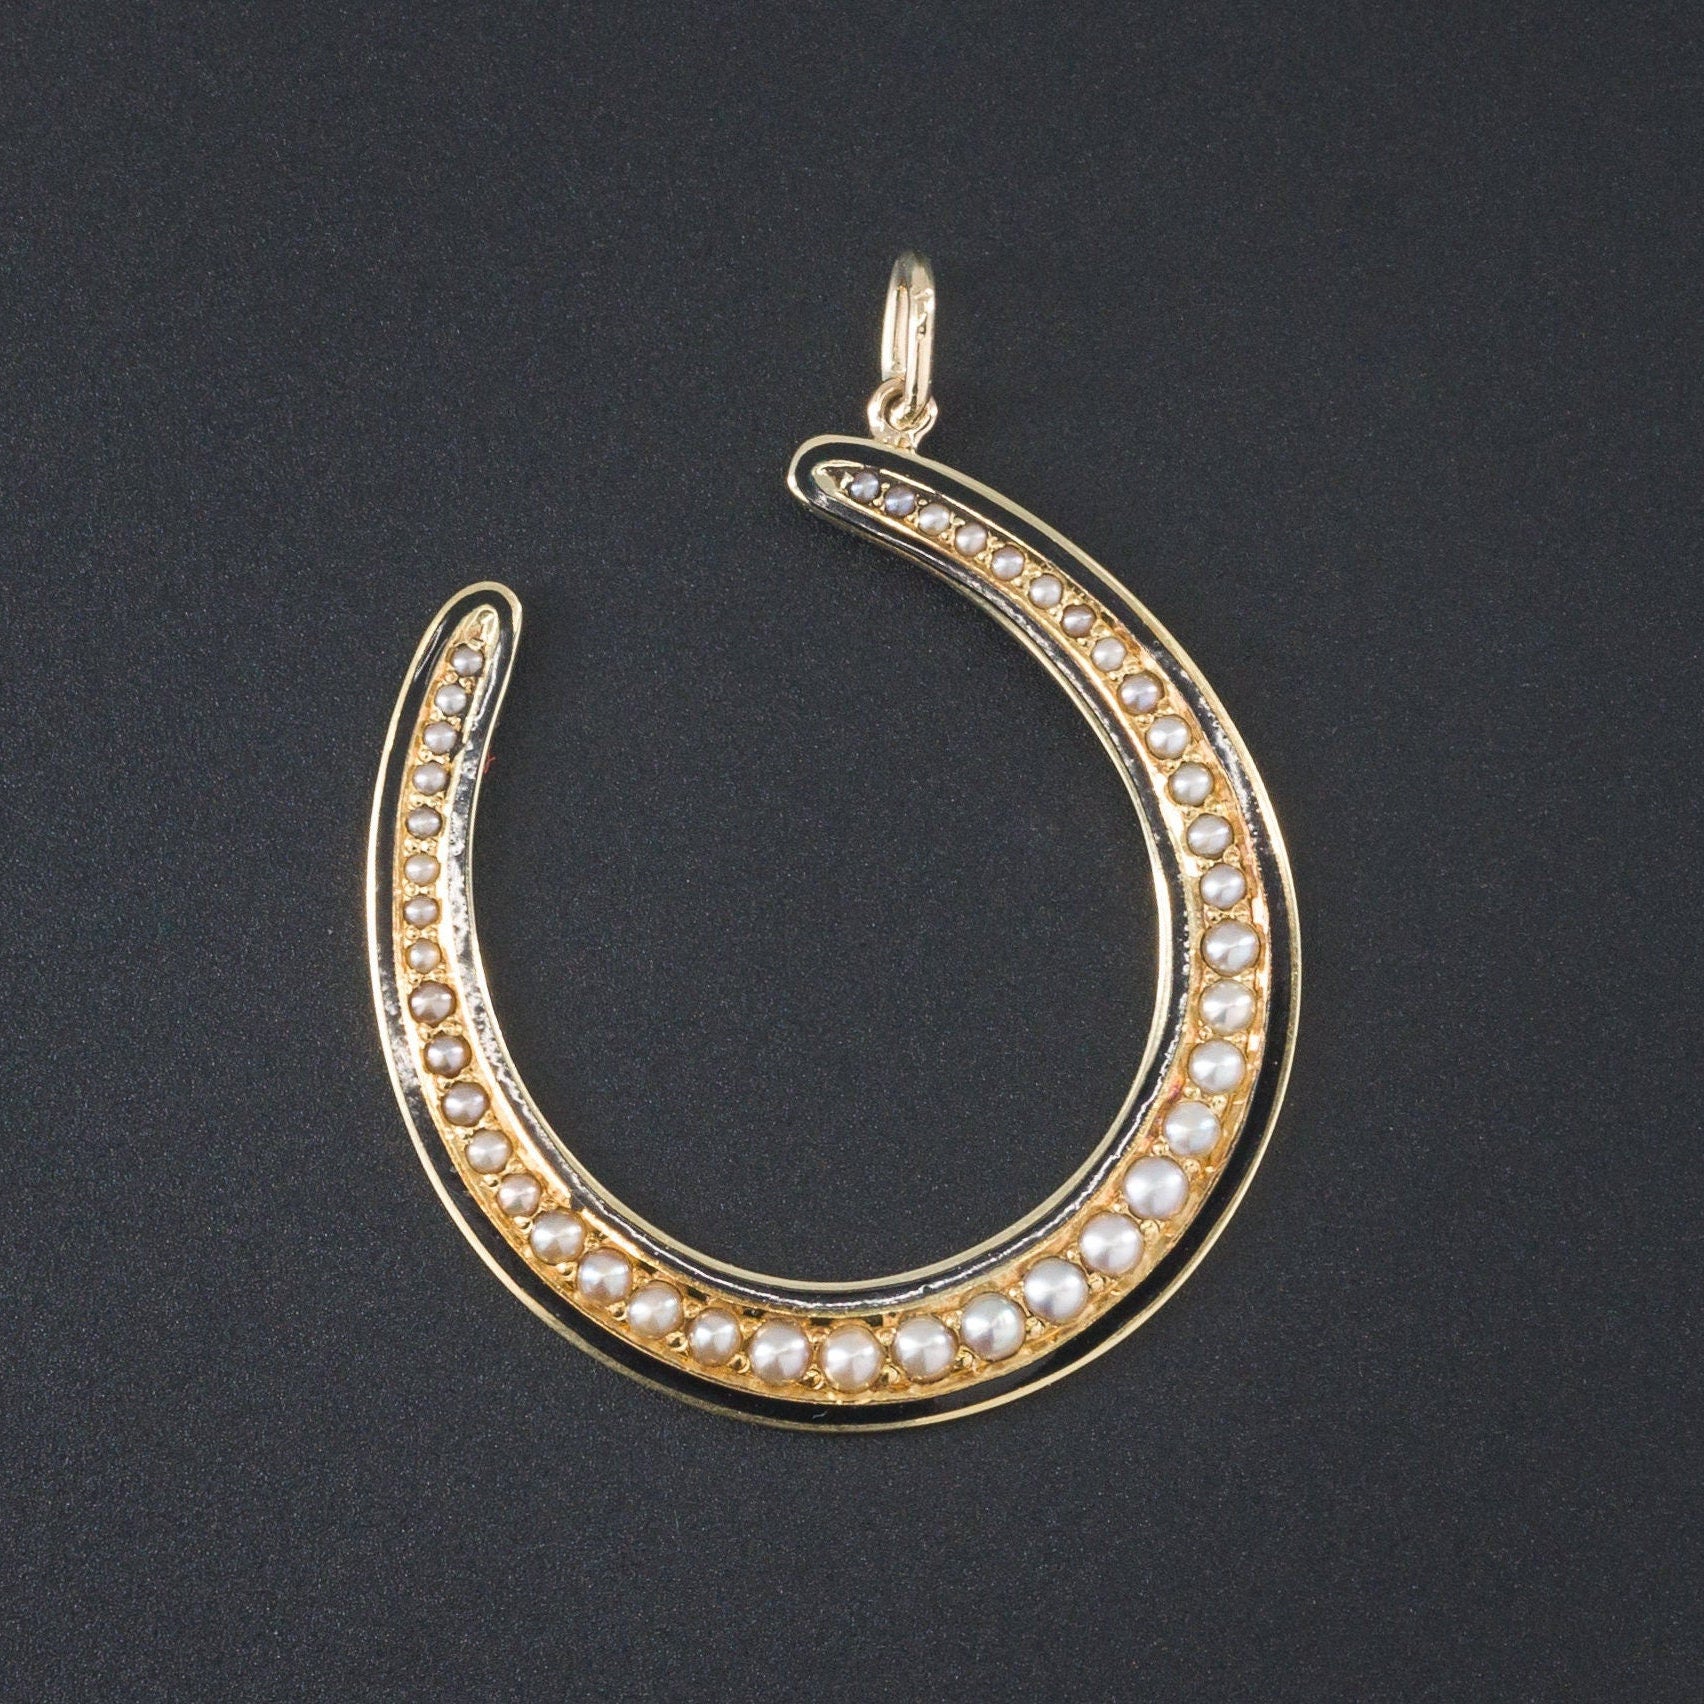 Horseshoe Pendant | 14k Gold Pearl & Enamel Horseshoe Pendant 